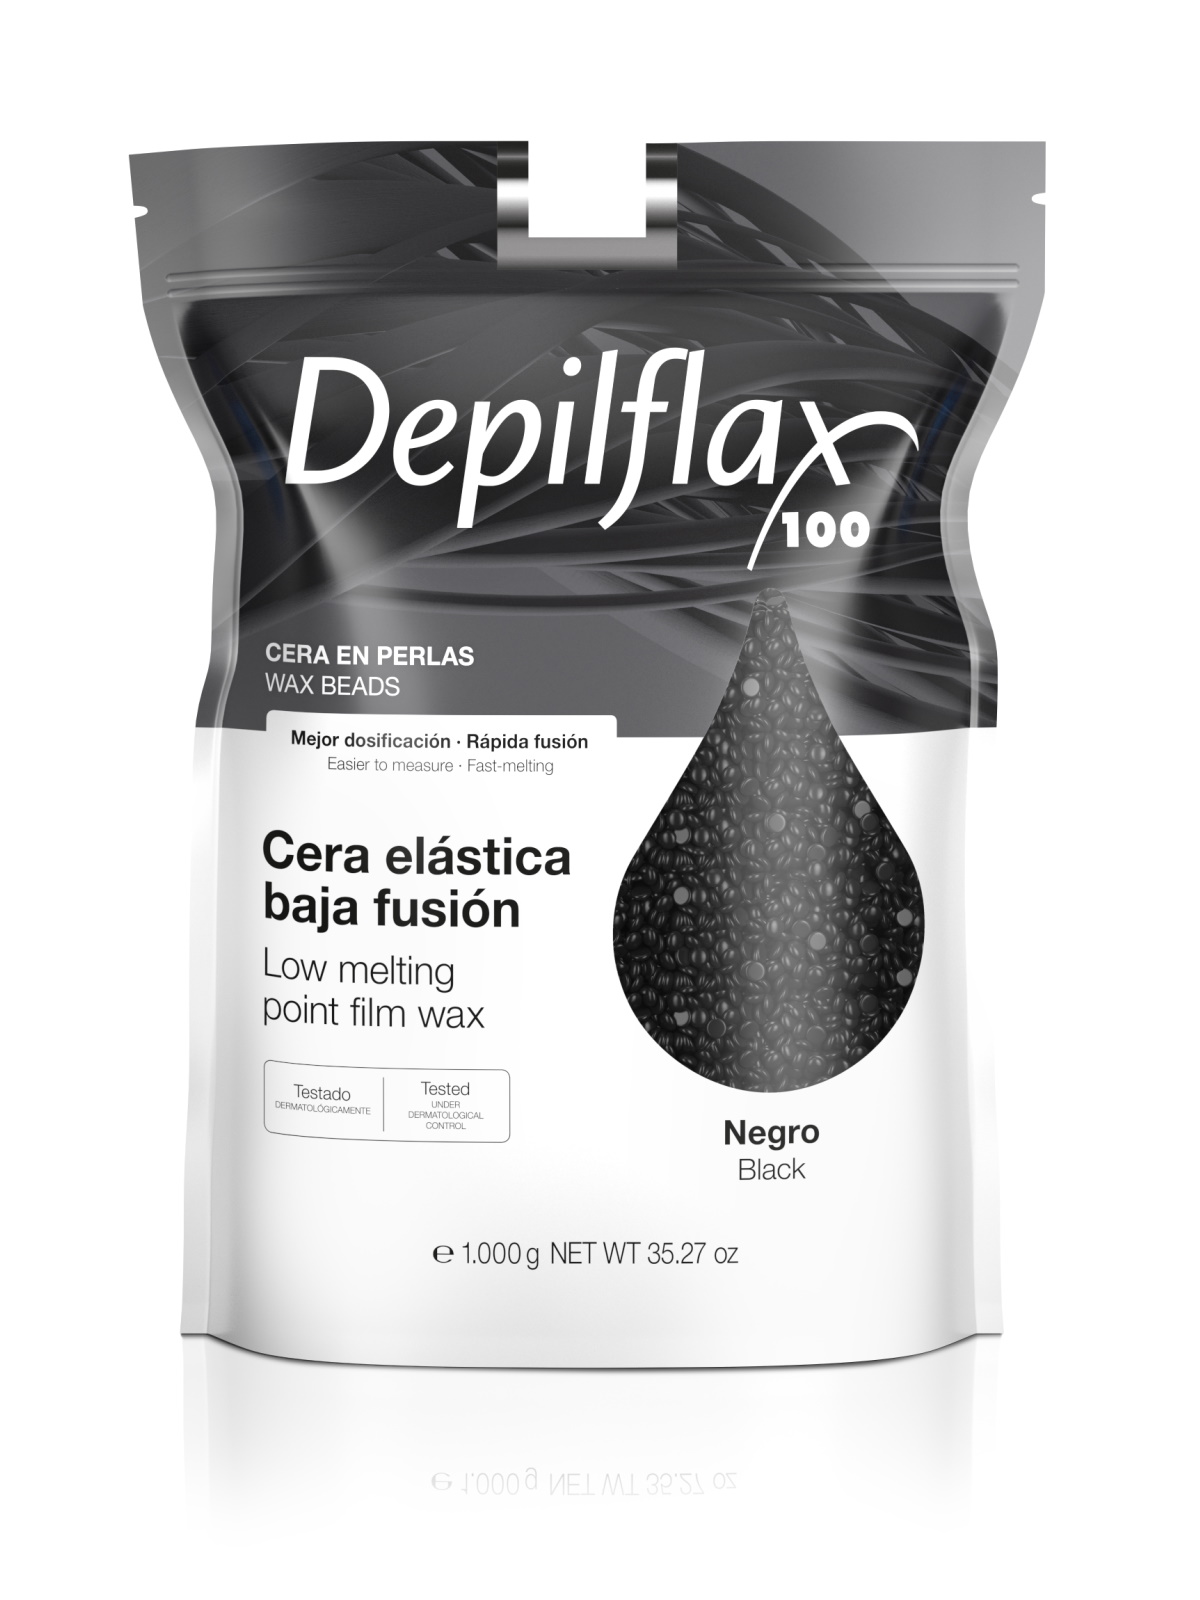 Воск для депиляции Depilflax Черный 1000 г depilflax 100 воск для депиляции в картридже аргана 110 г